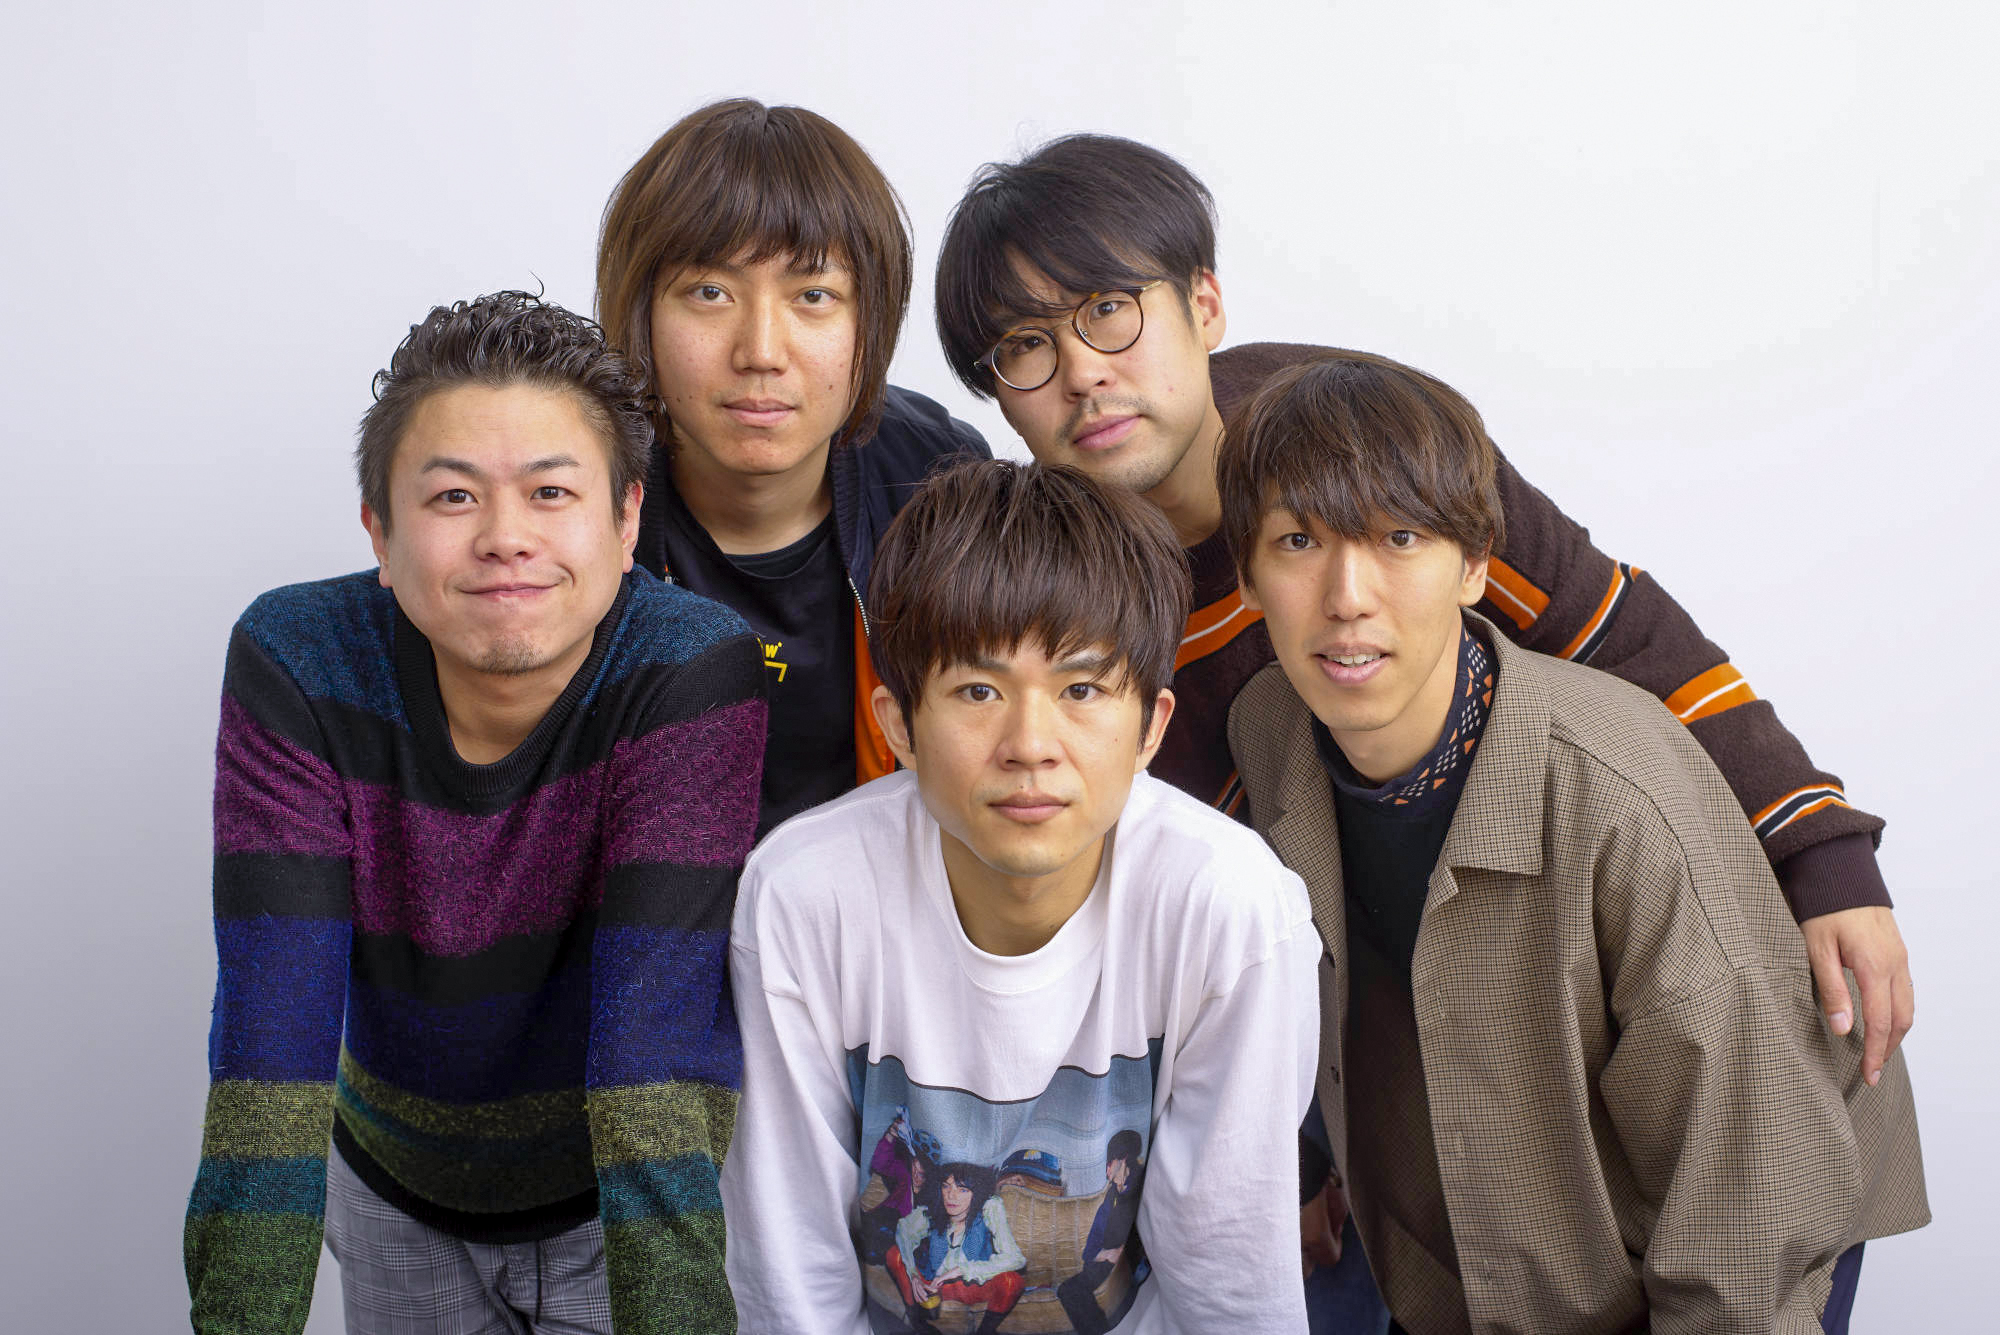 ロックバンド キュウソネコカミ にインタビュー Kiss Press キッスプレス 神戸市 兵庫県の地域情報サイト